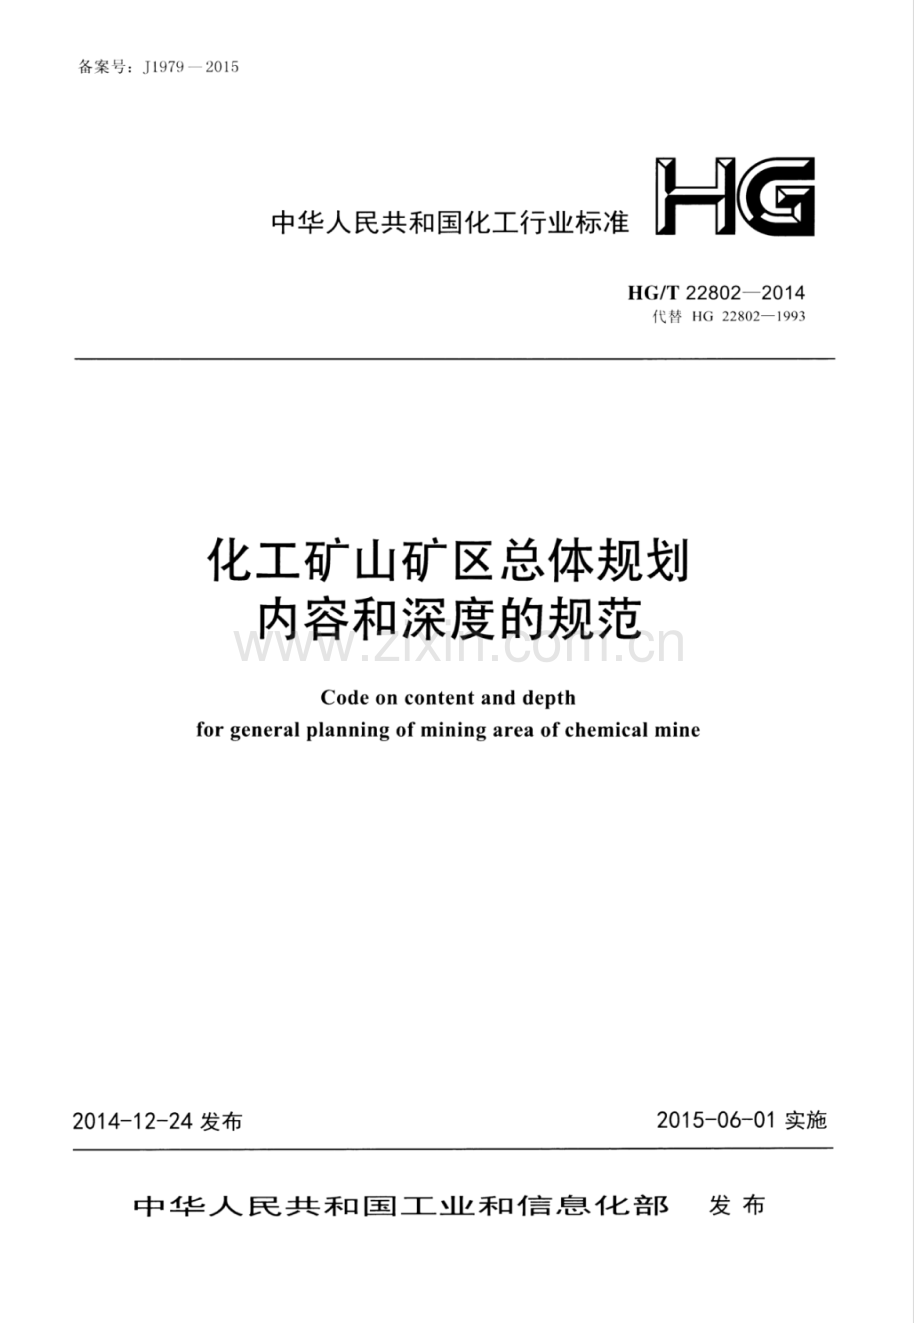 HG∕T 22802-2014 （代替 HG 22802-1993）化工矿山矿区总体规划内容和深度的规范.pdf_第1页